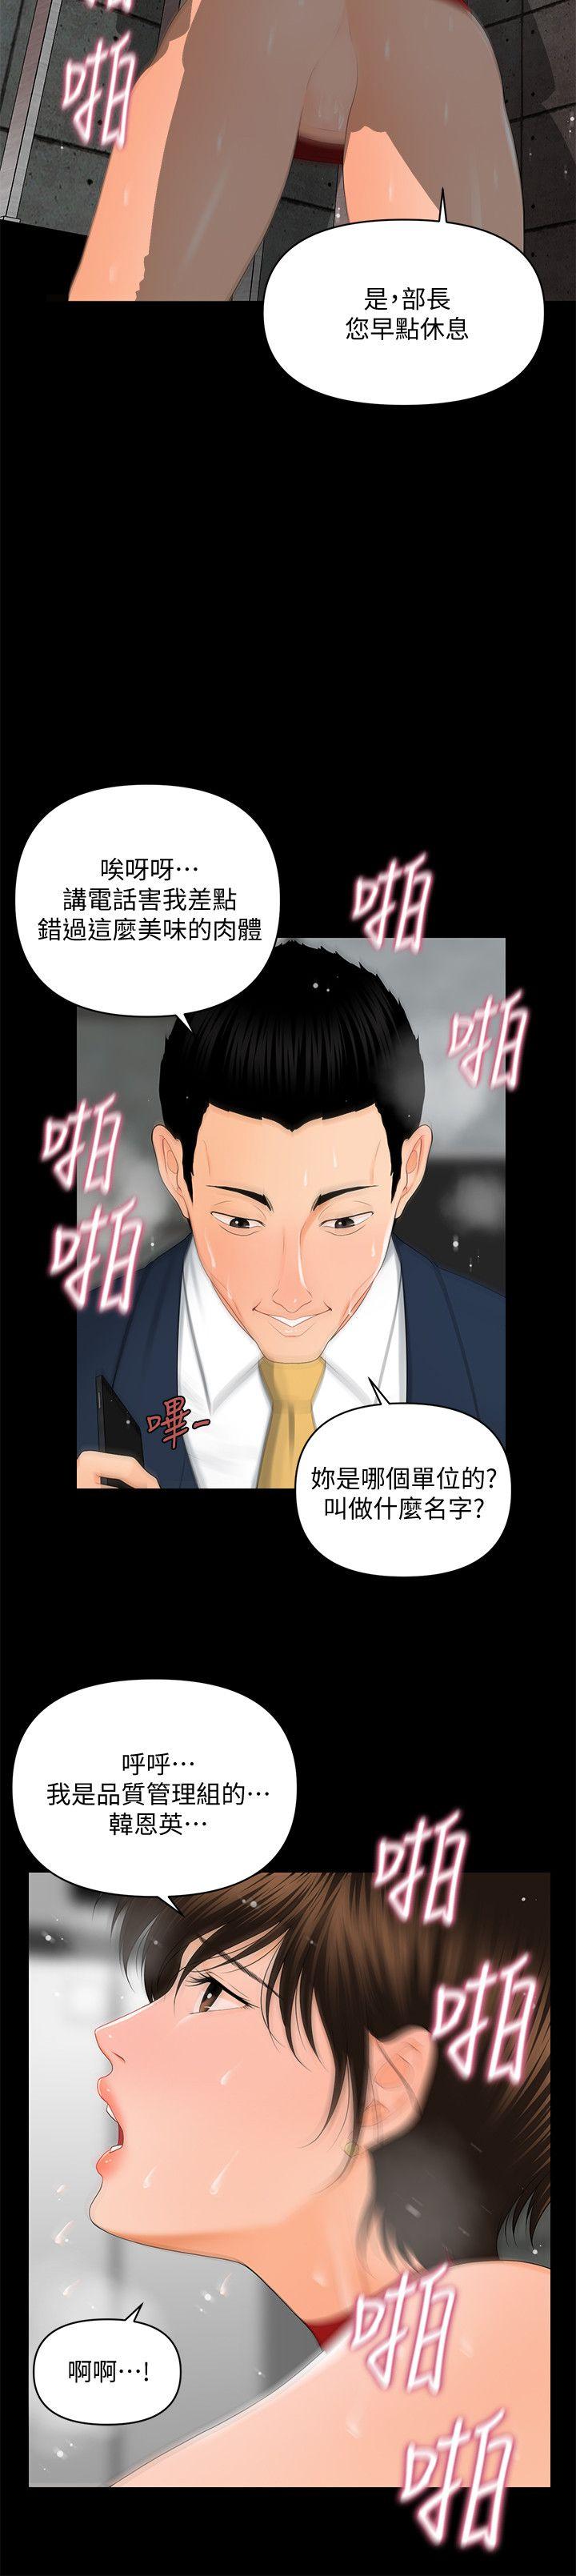 韩国污漫画 秘書的潛規則 第10话 21